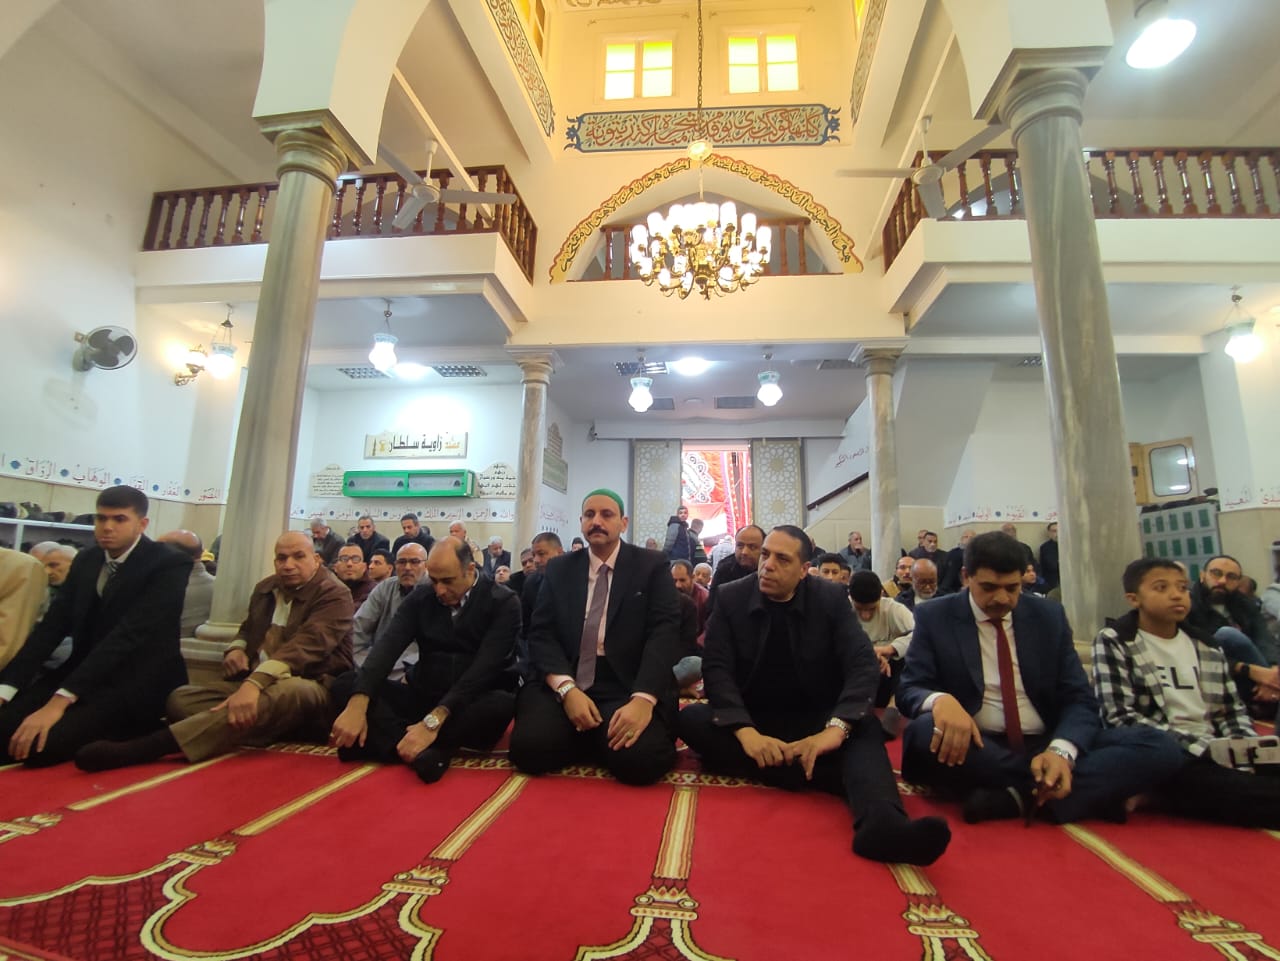 افتتاح مسجد زاوية سلطان بمحطة الرمل بالإسكندرية